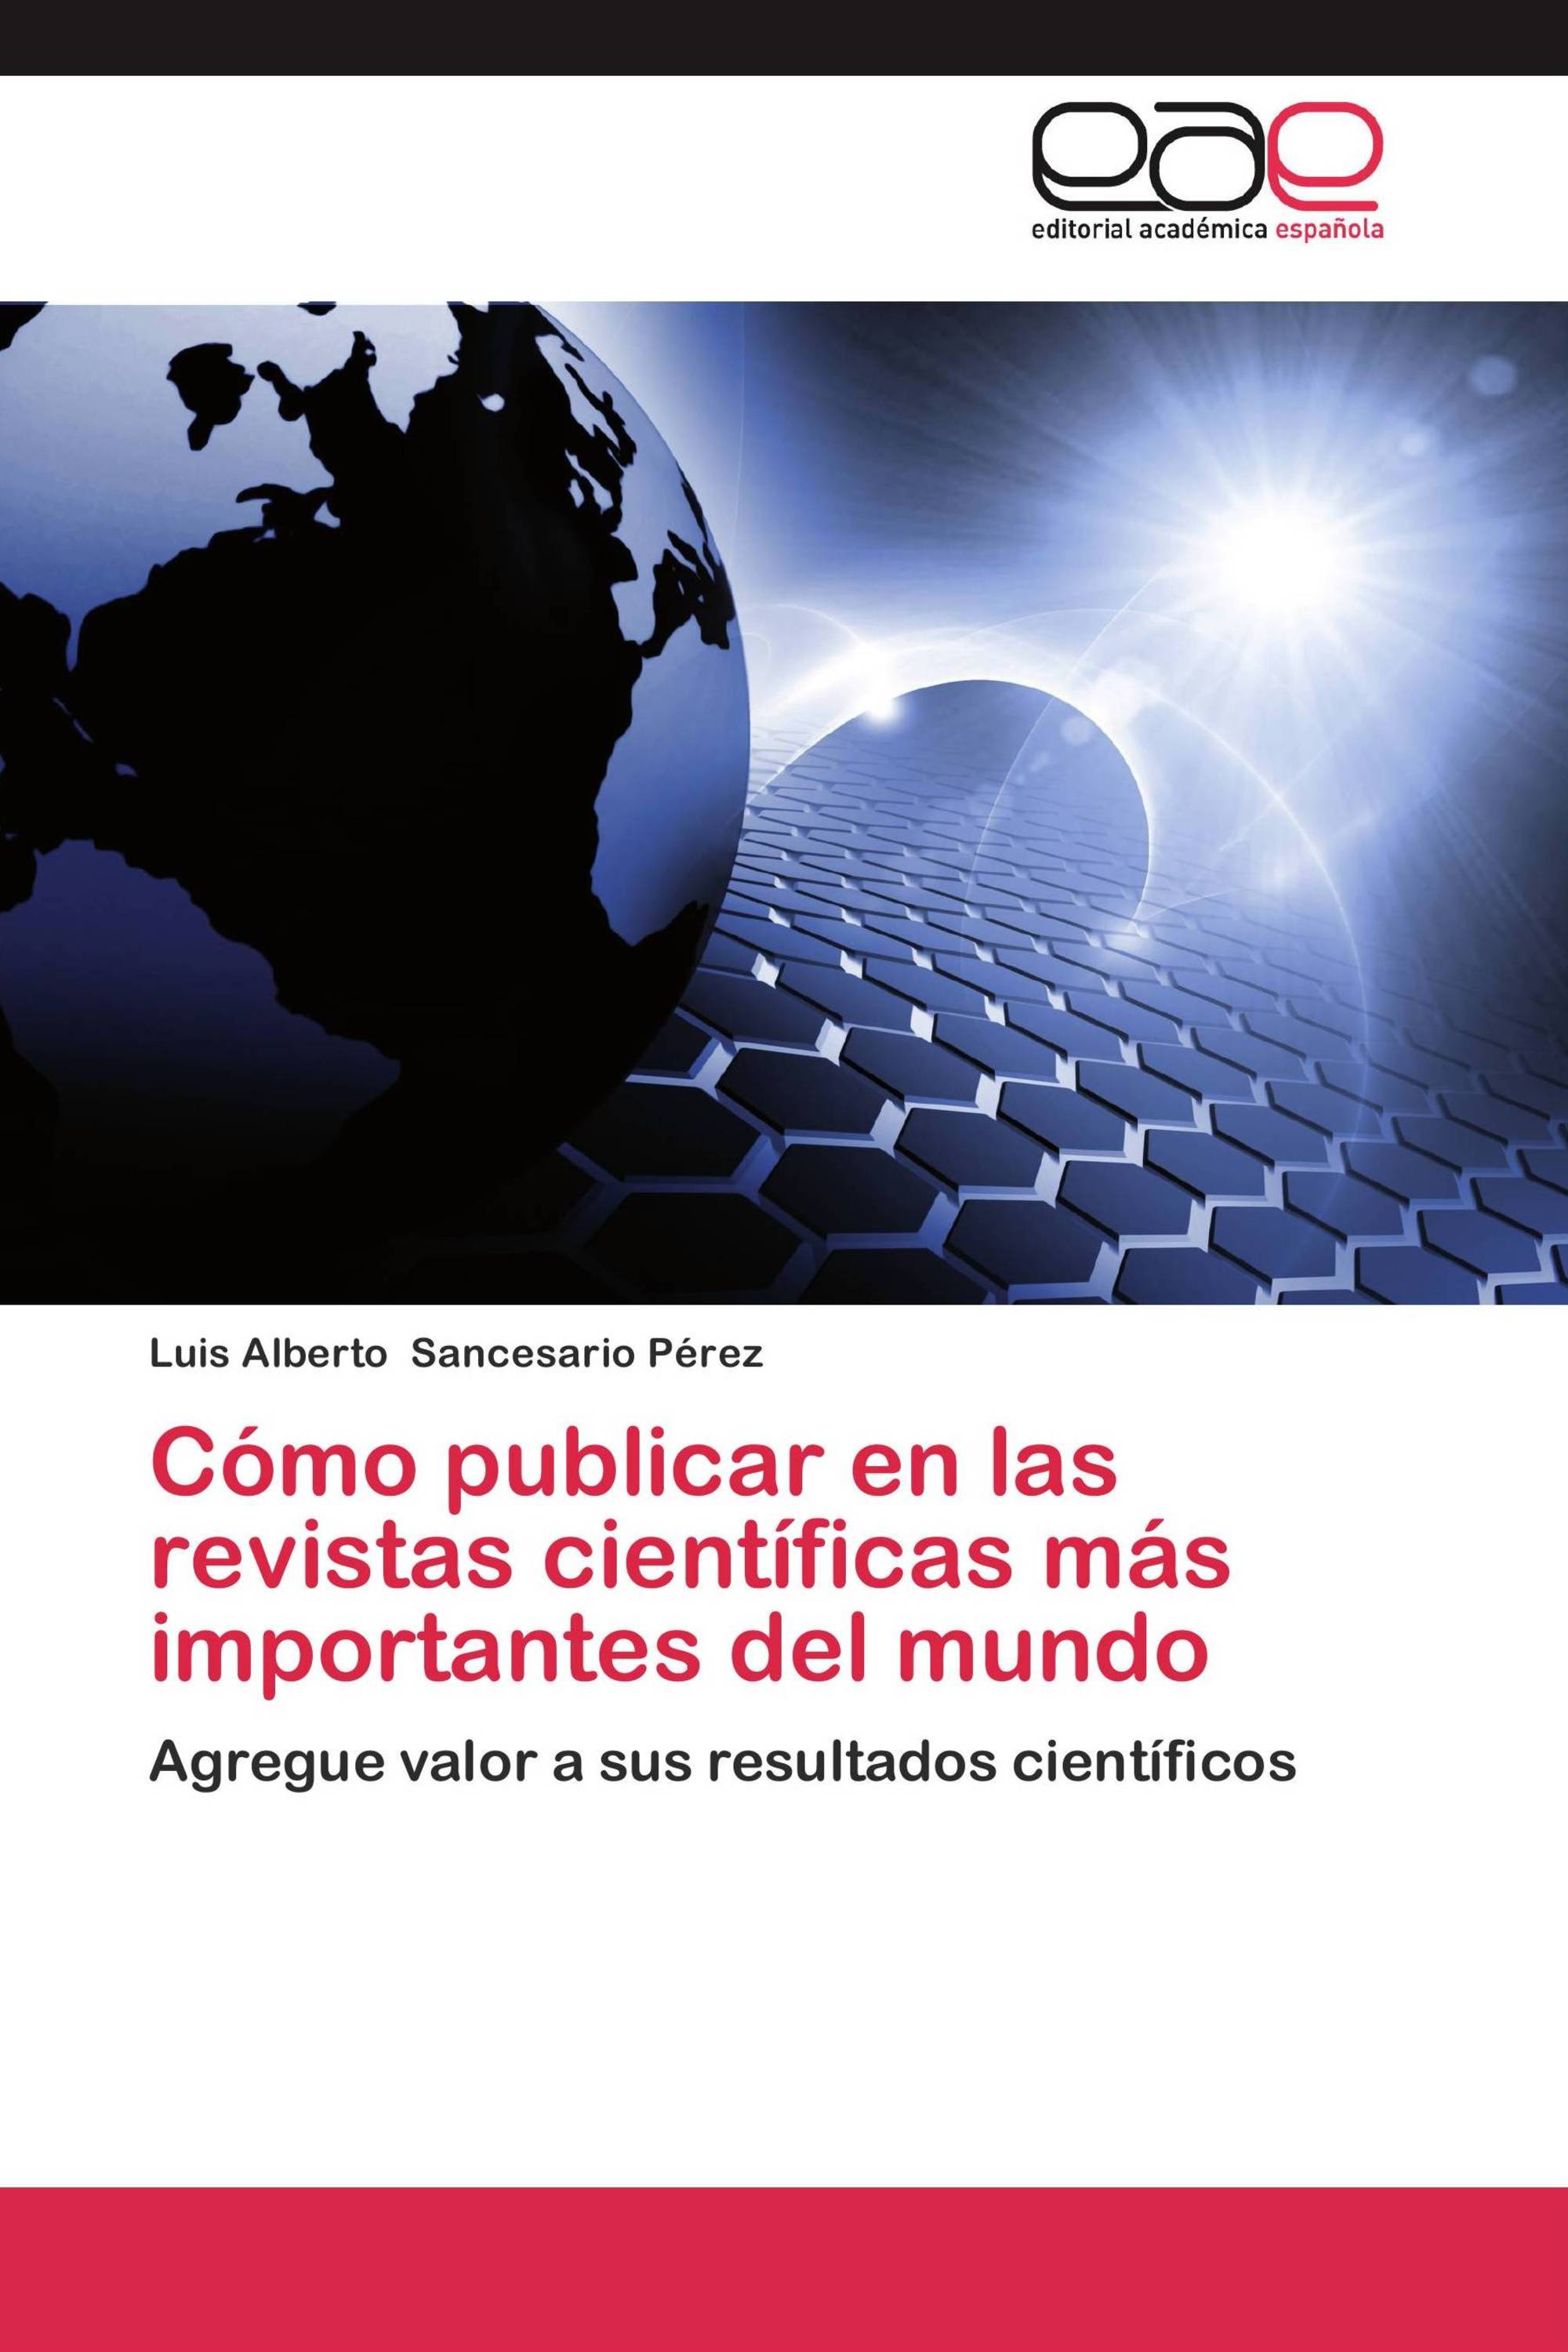 Las portadas de las revistas científicas más importantes del mundo